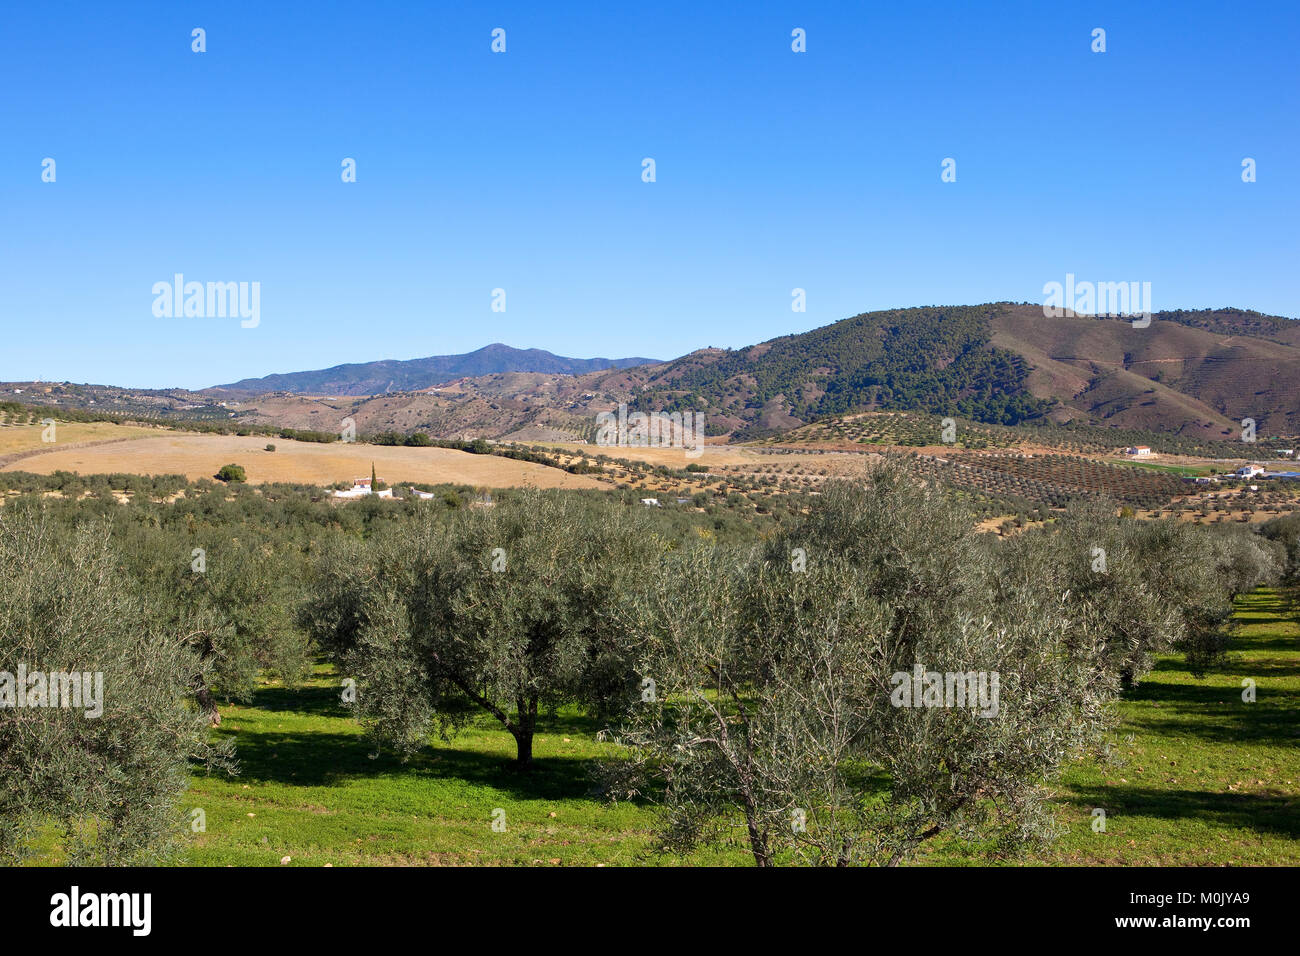 Una árida scenic olivar con montañas boscosas bajo un cielo azul en Andalucía España Foto de stock